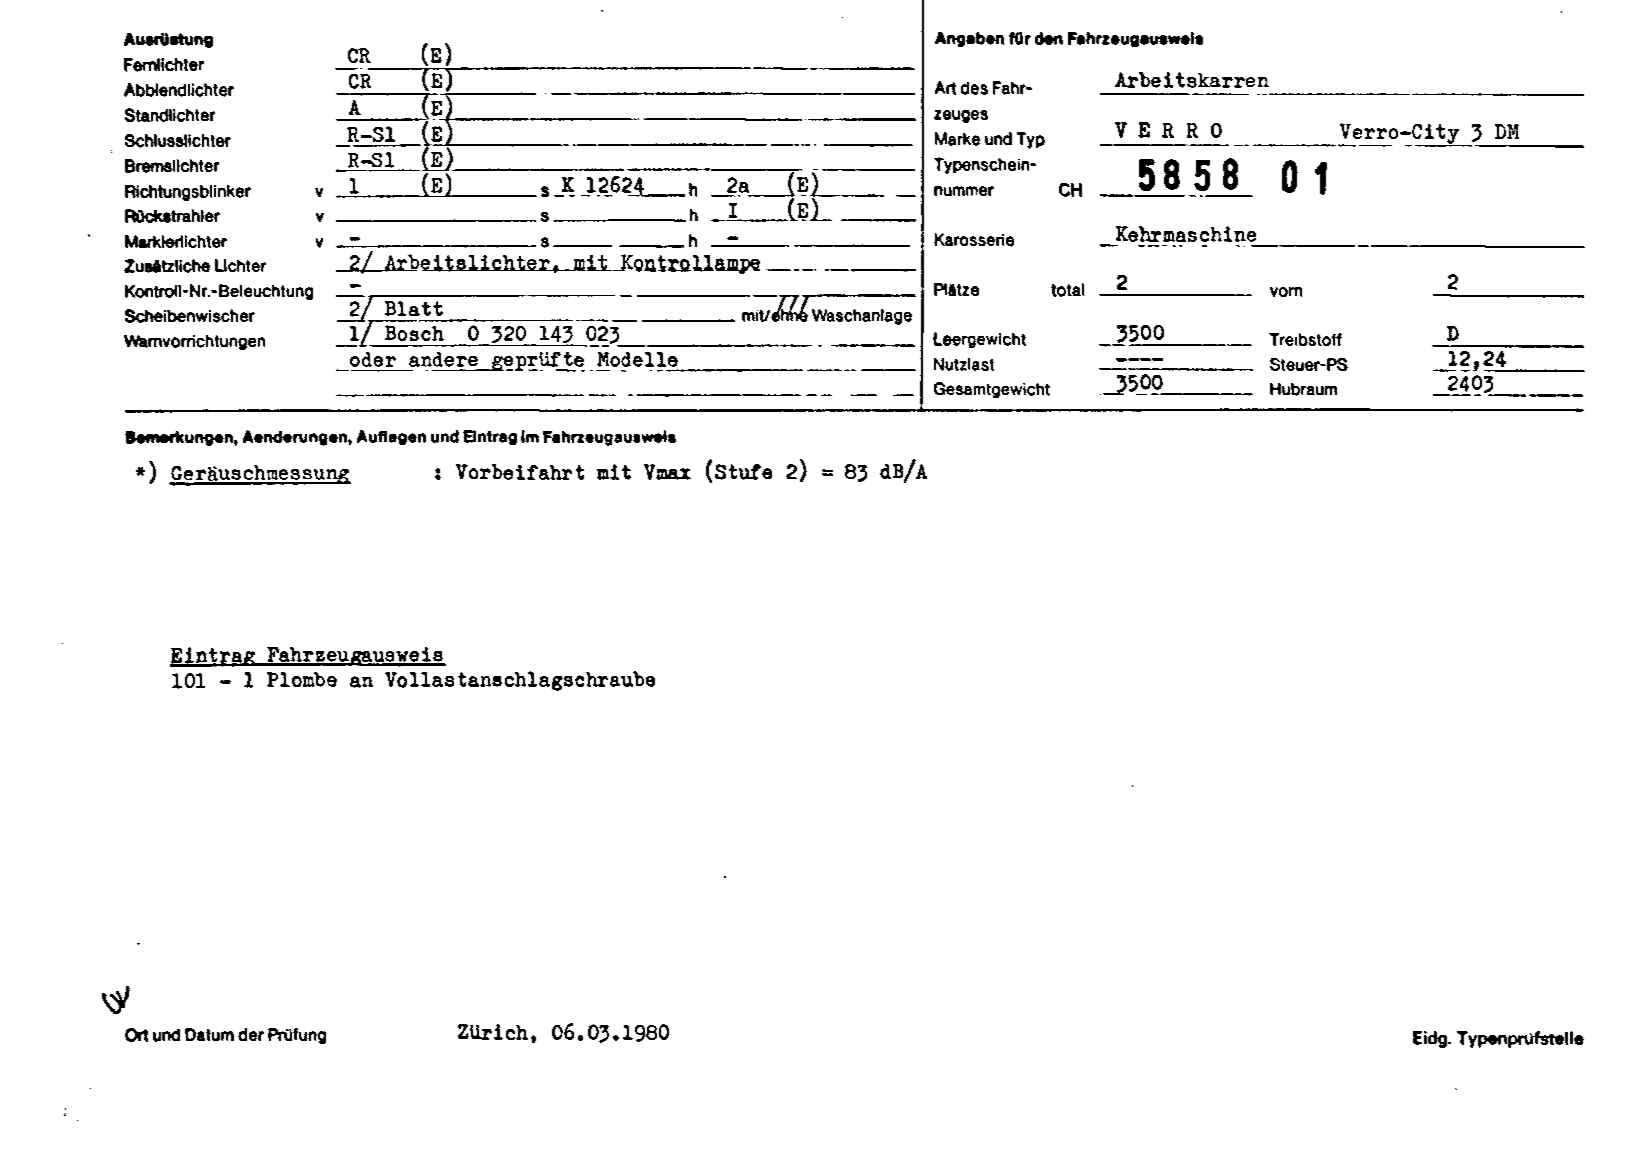 Swiss Certificate of Conformity 585801 German Page 2 (TG.DE.585801.2.png)